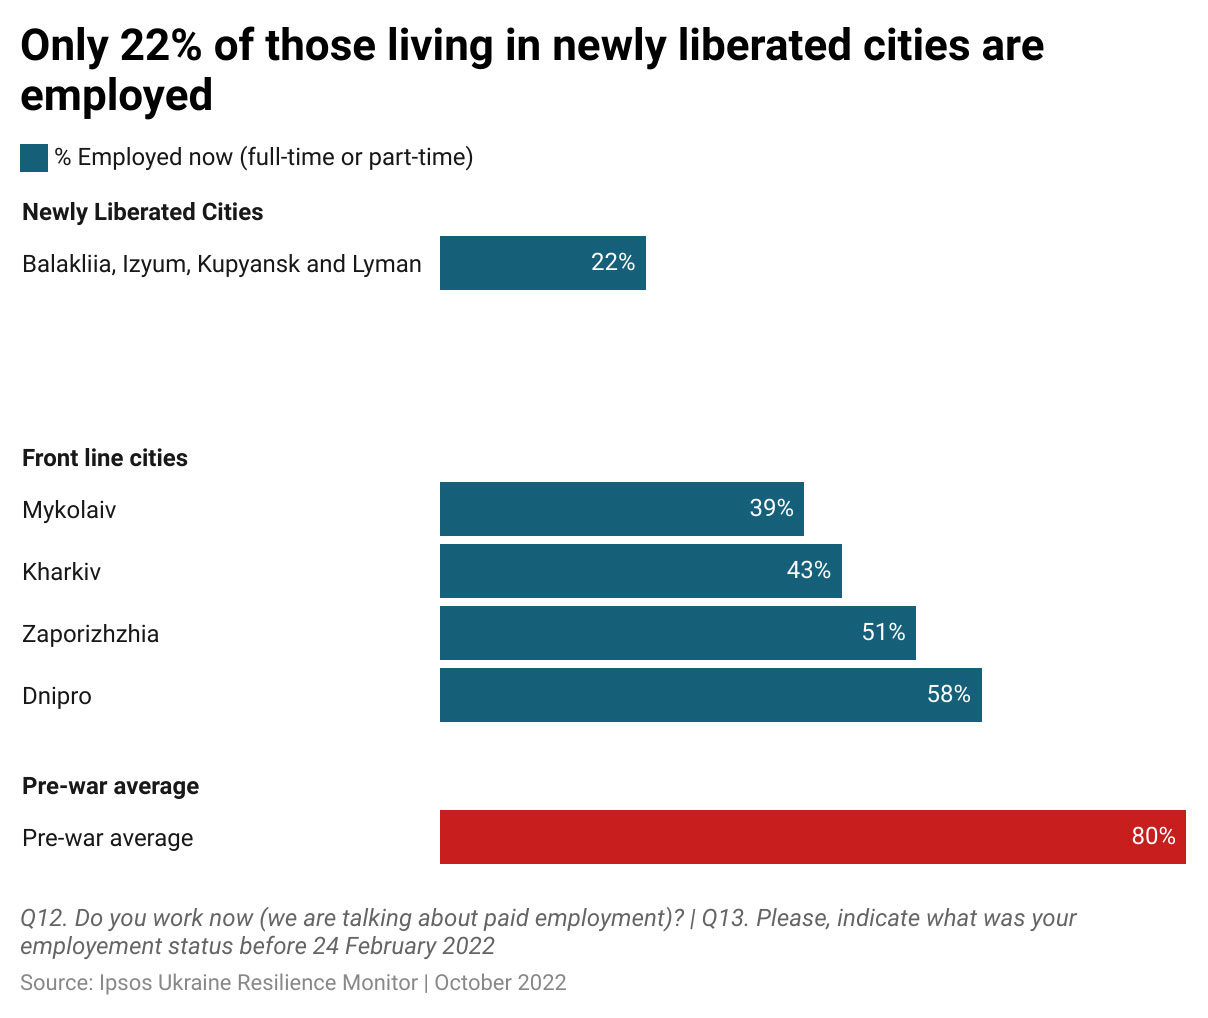 “Yeni özgürleşen şehirlerde yaşayanların sadece %22'si çalışıyor” başlıklı tablo